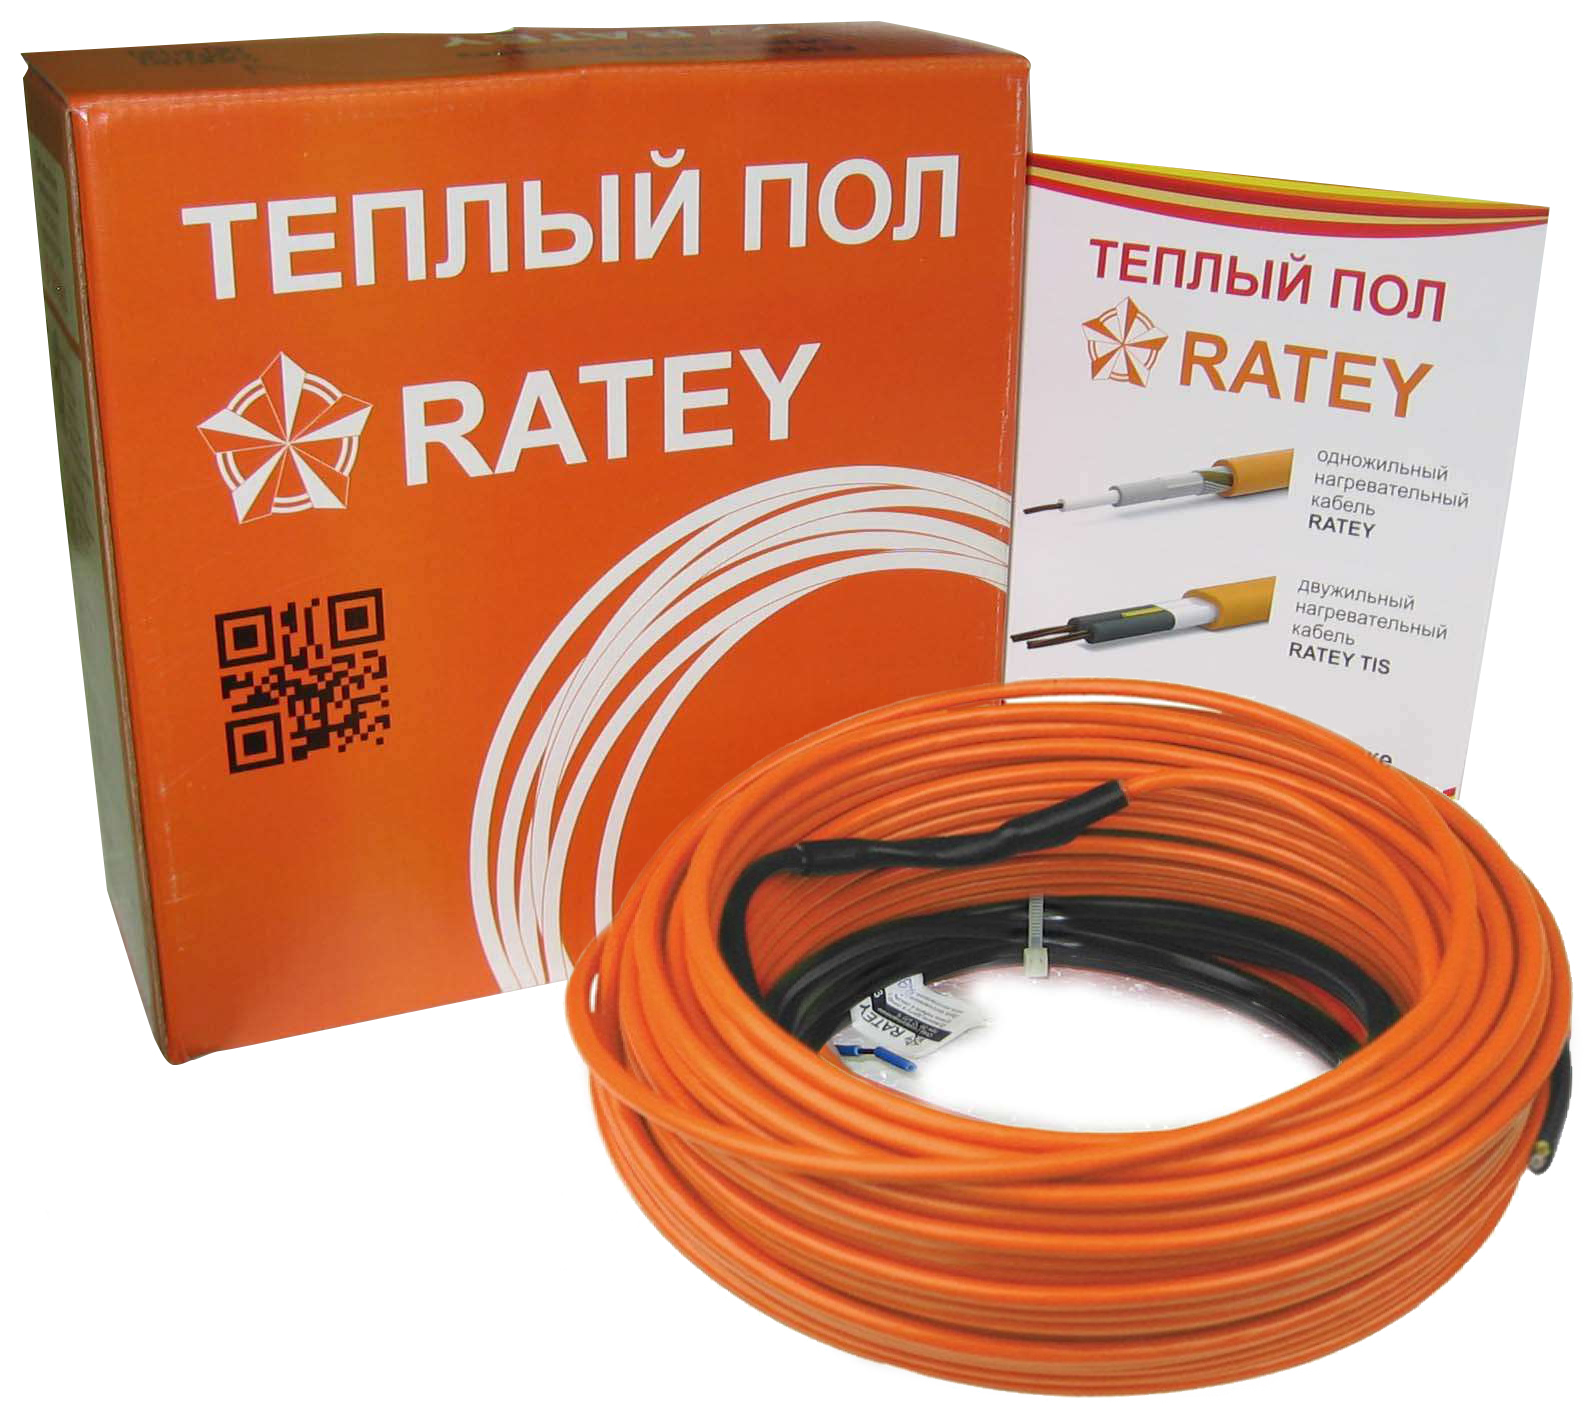 Тепла підлога Ratey під ламінат Ratey RD1 0.560